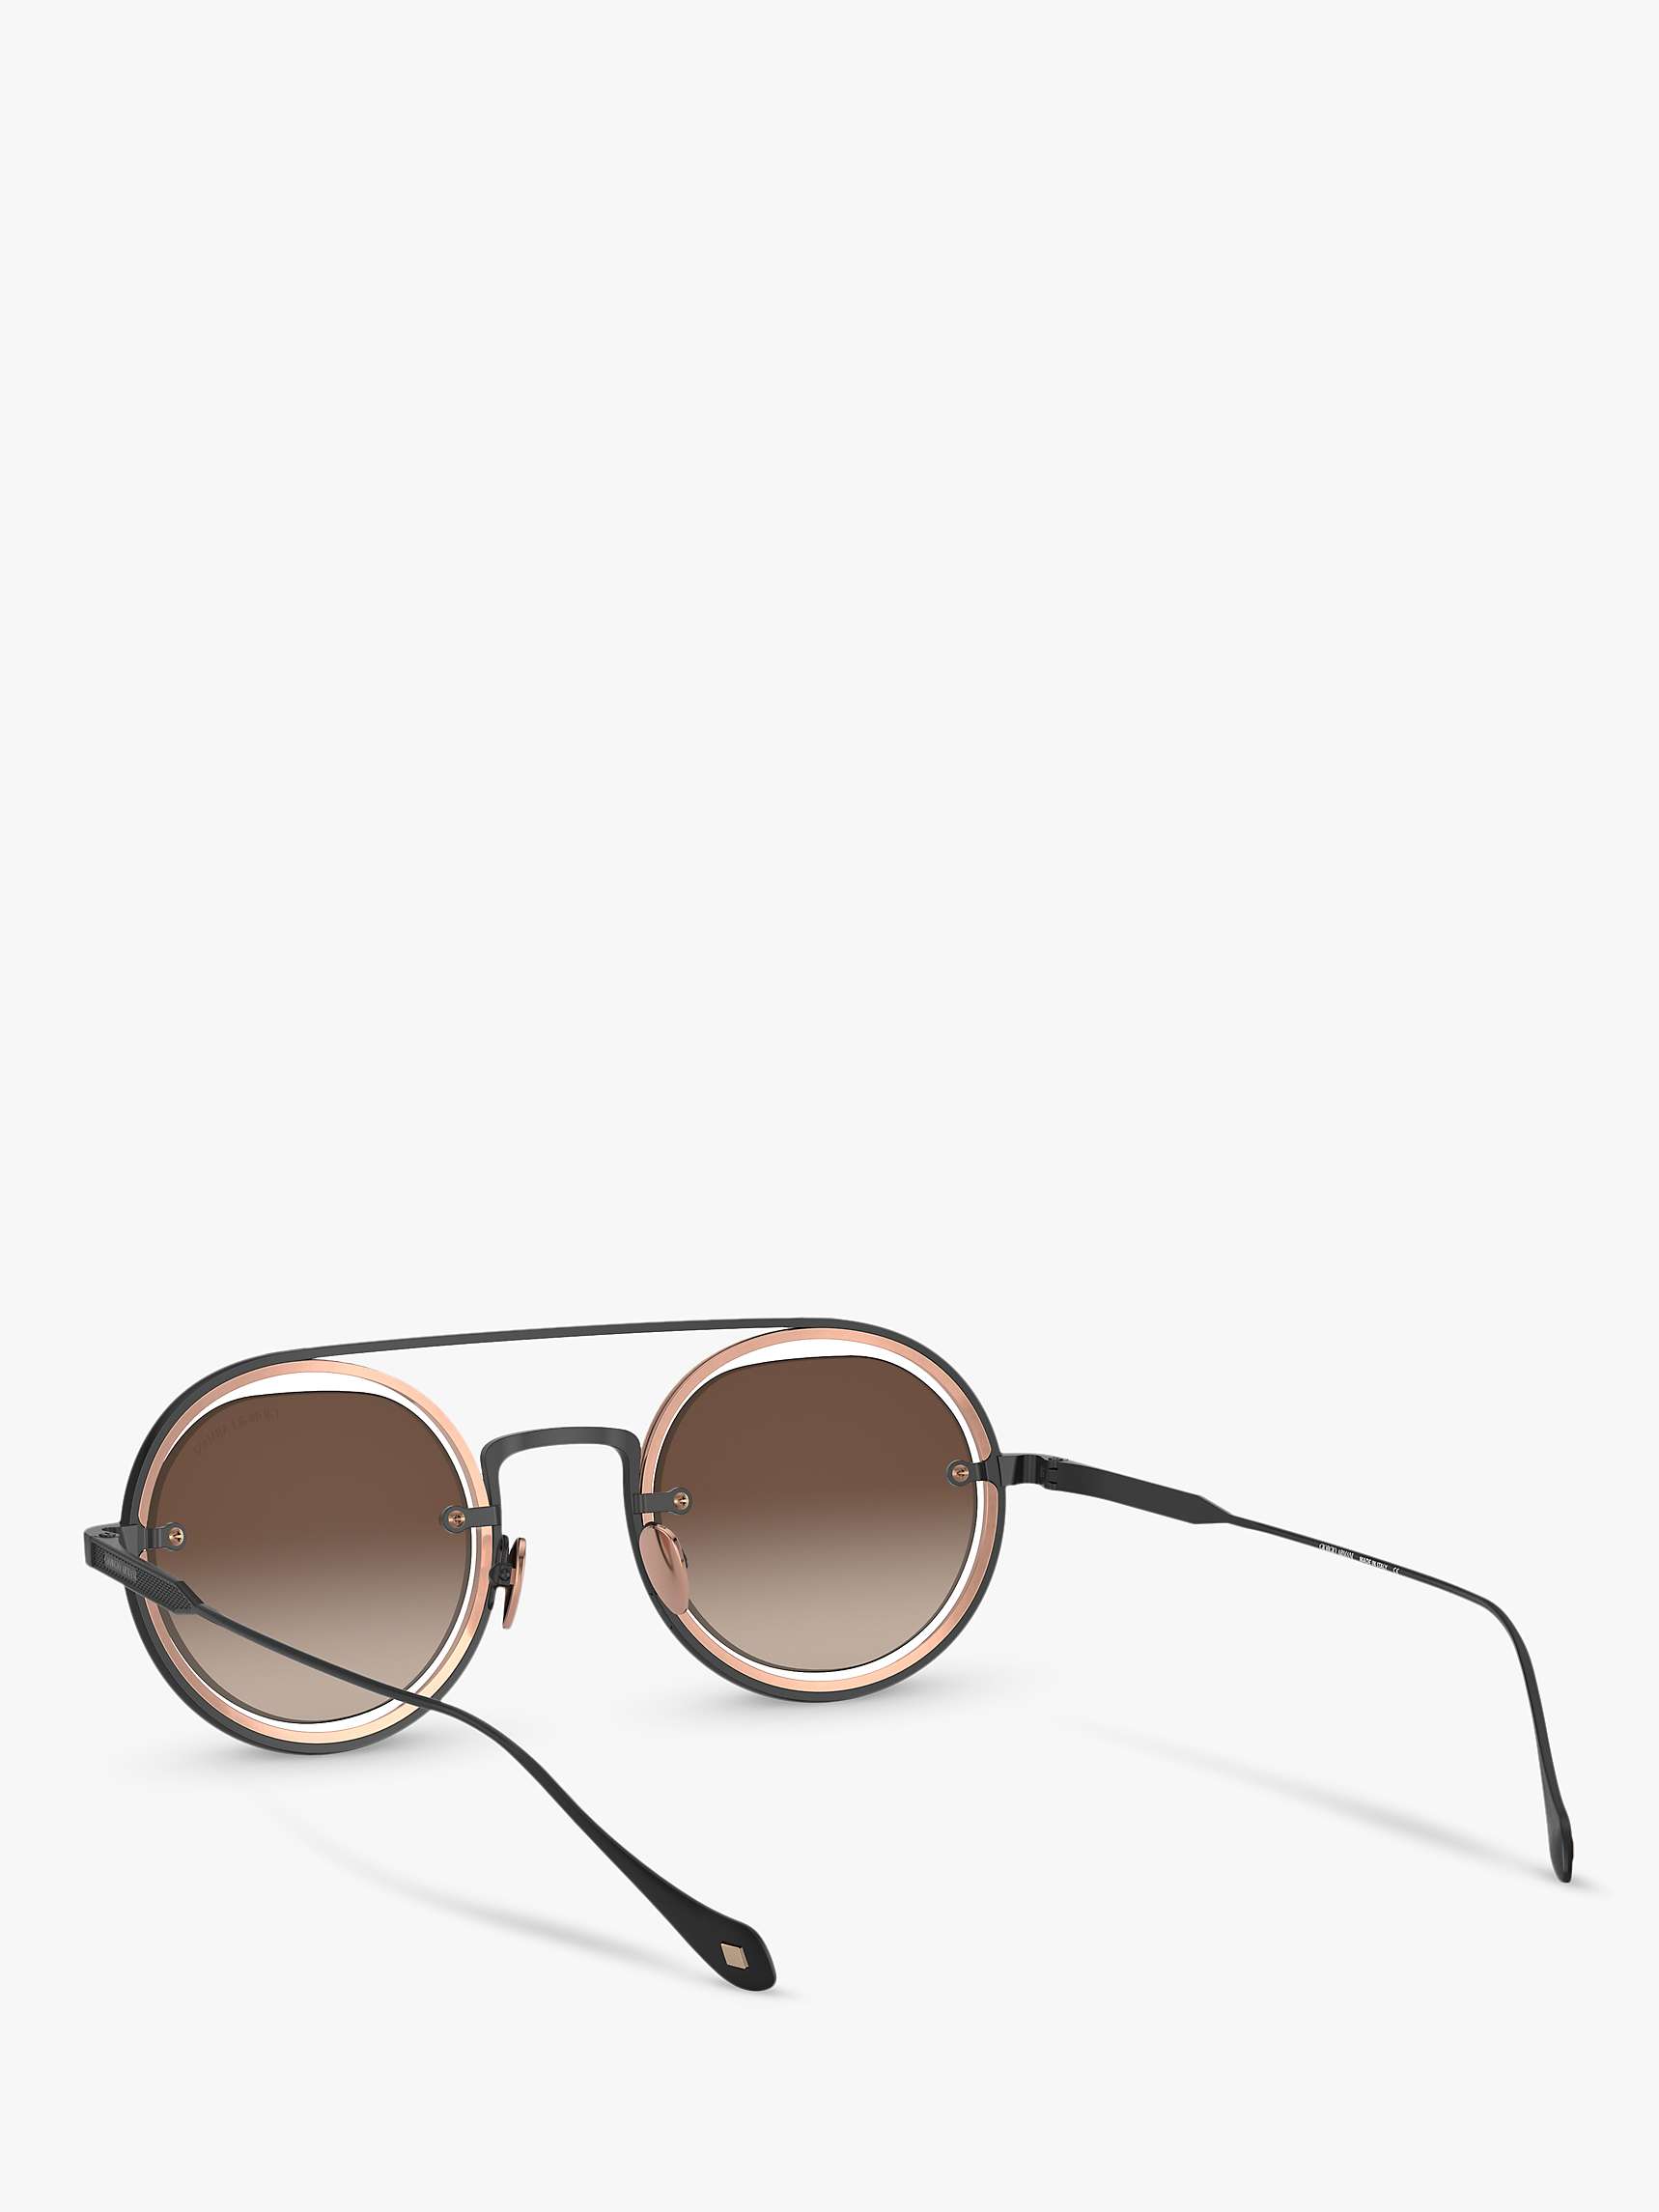 Buy Giorgio Armani AR6085 Men's Round Sunglasses, Matte Black/Bronze Gradient Online at johnlewis.com